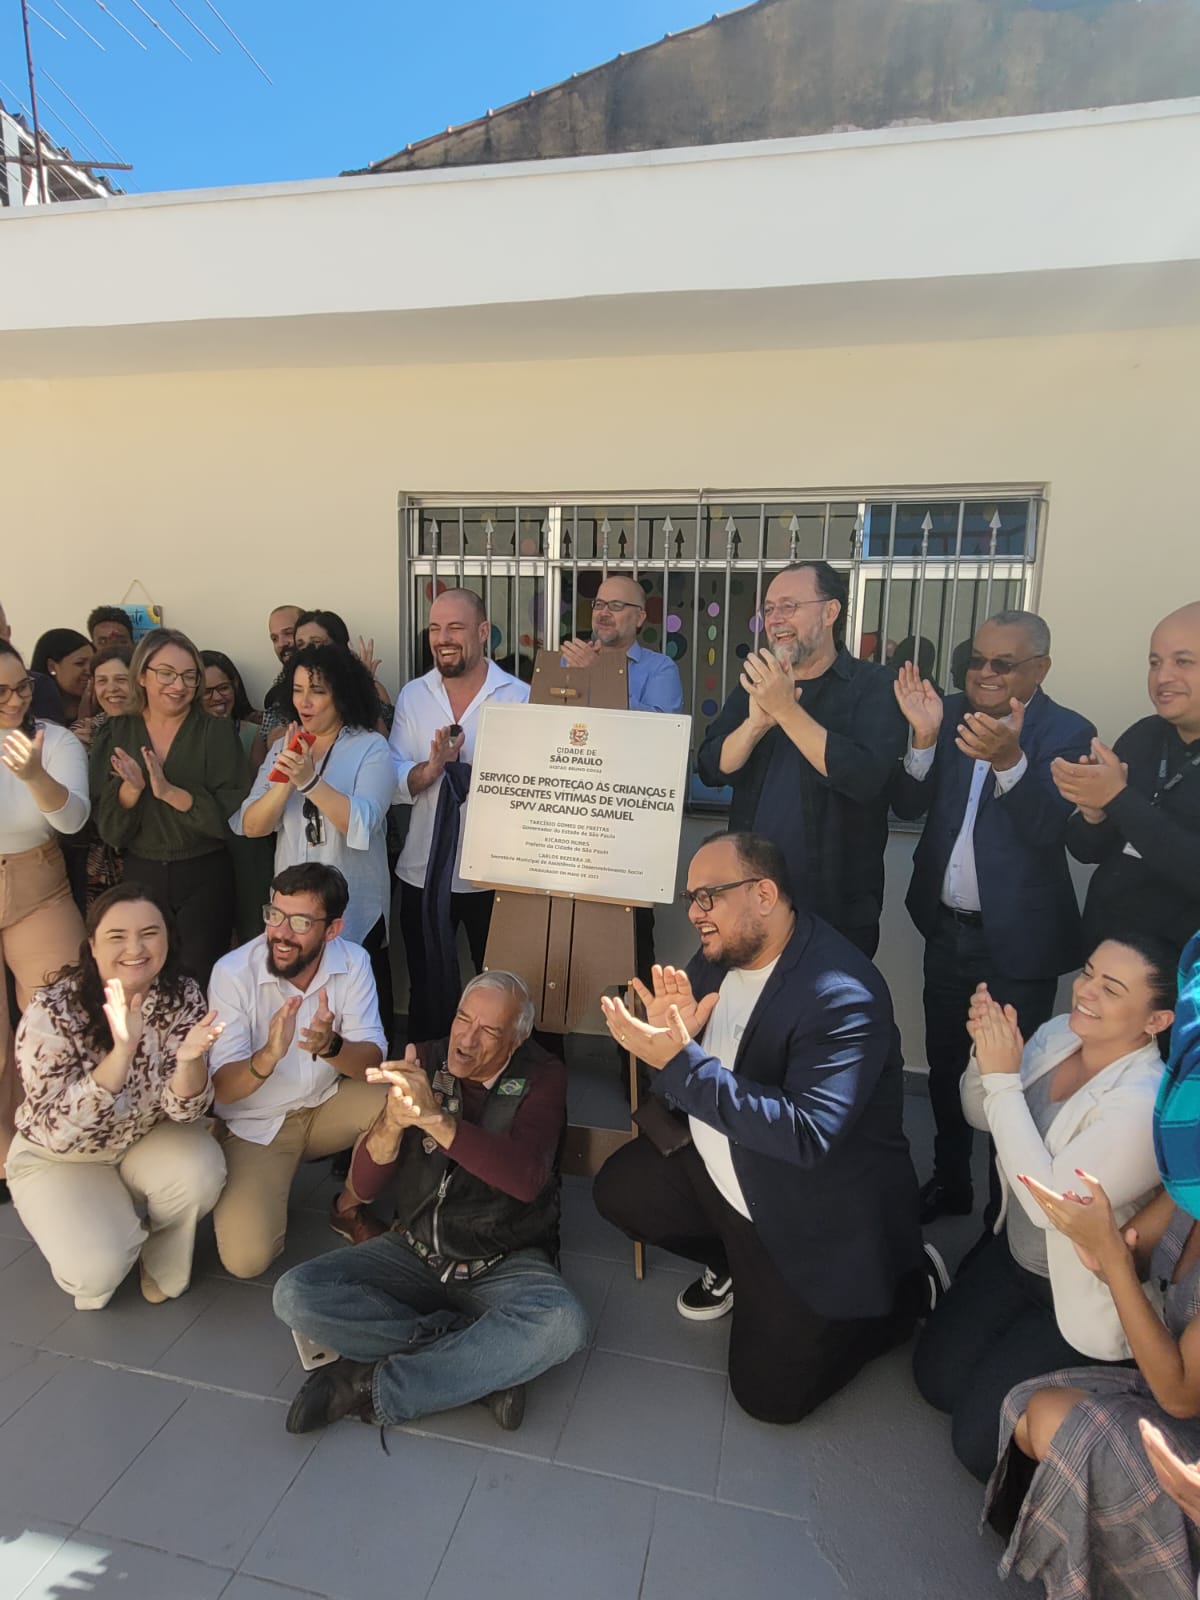 No centro da foto, a placa de inauguração do SPVV 'Arcanjo Samuel'. Ao redor da placa, o secretário de Assistência e Desenvolvimento Social, e as pessoas que participaram da cerimônia, sorrindo e aplaudindo.